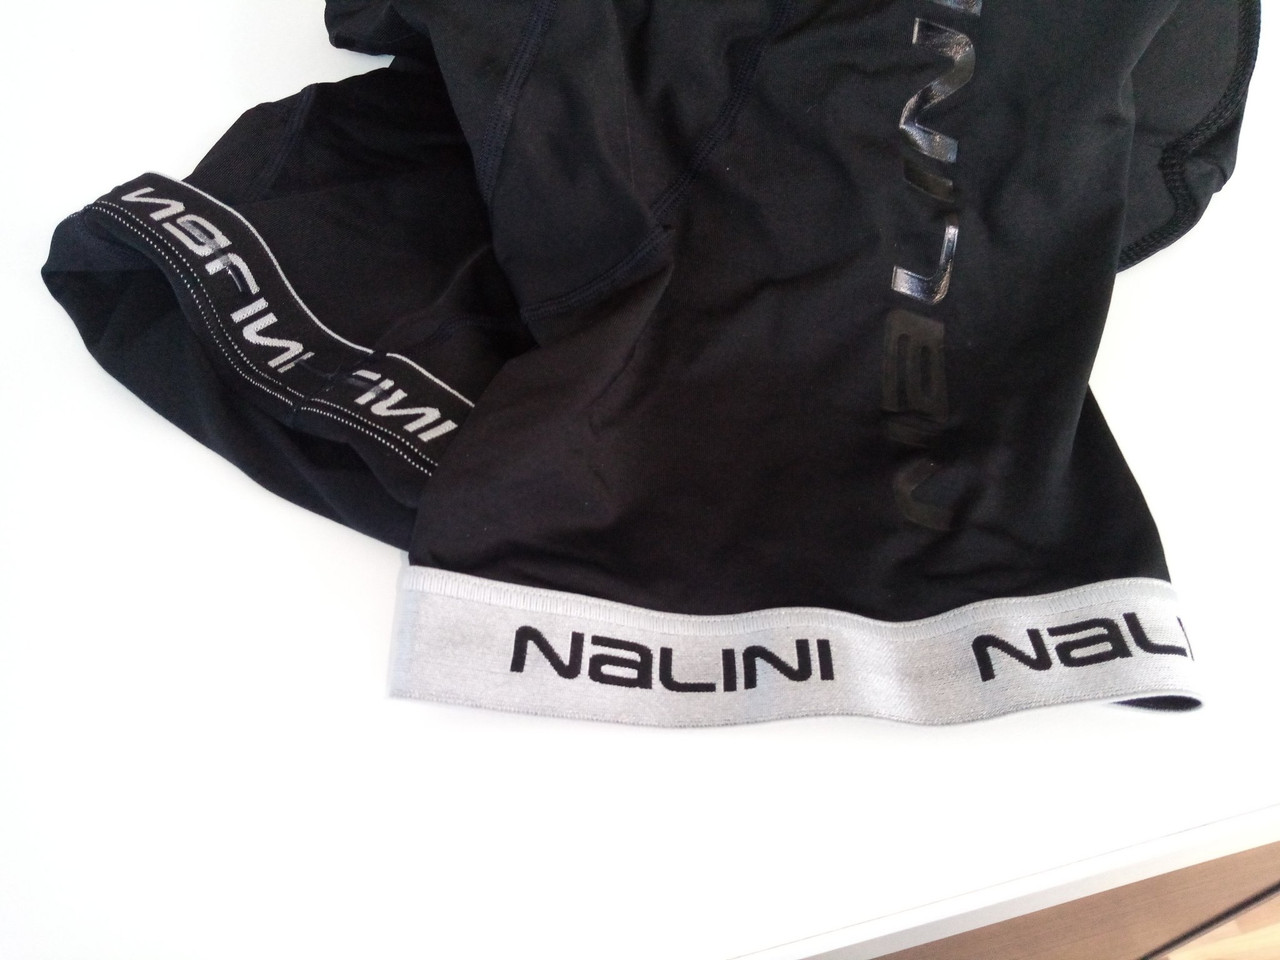 Nalini Marmo Black Bib Shorts Reflective